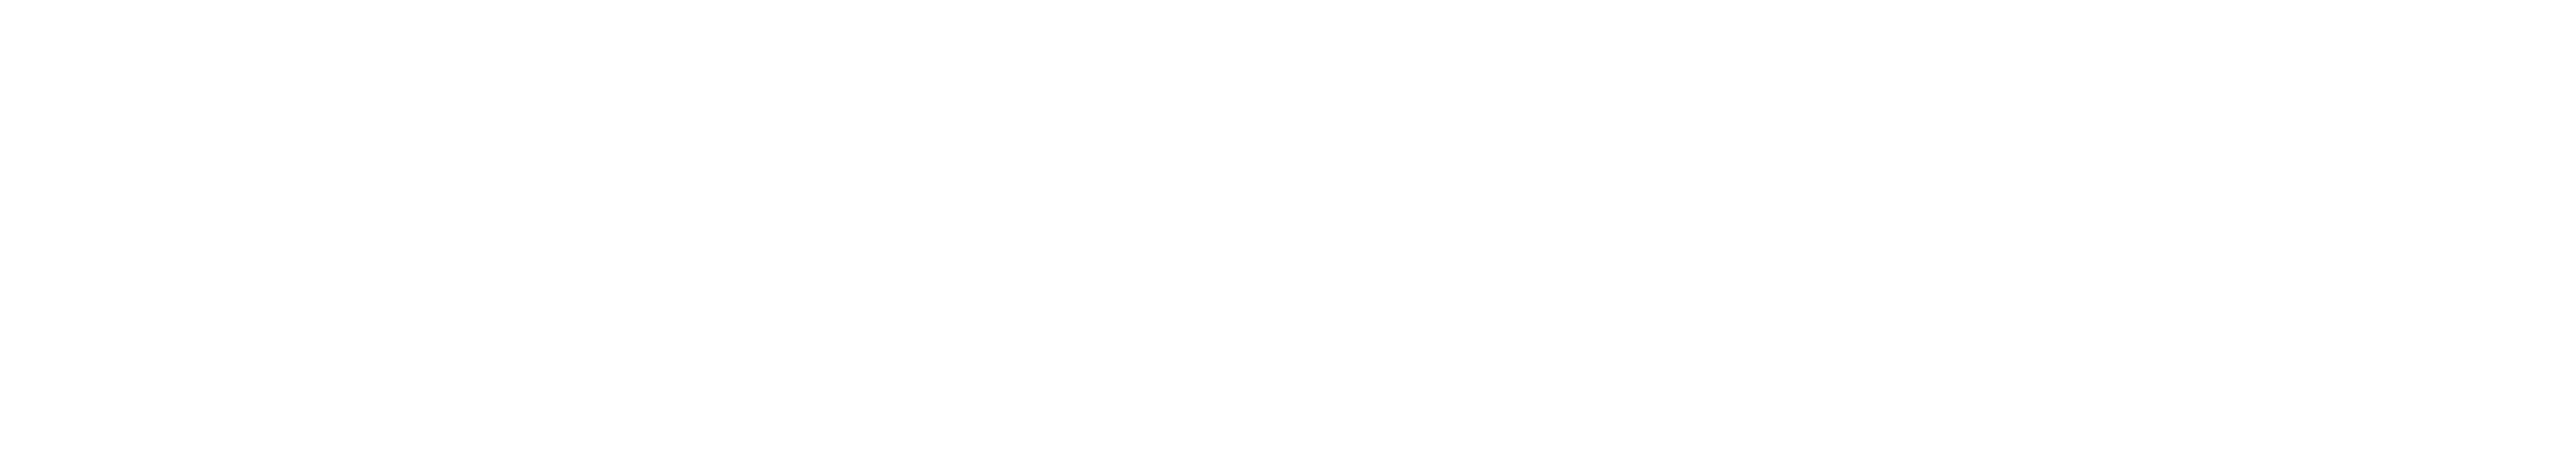 Katie Loxton logo